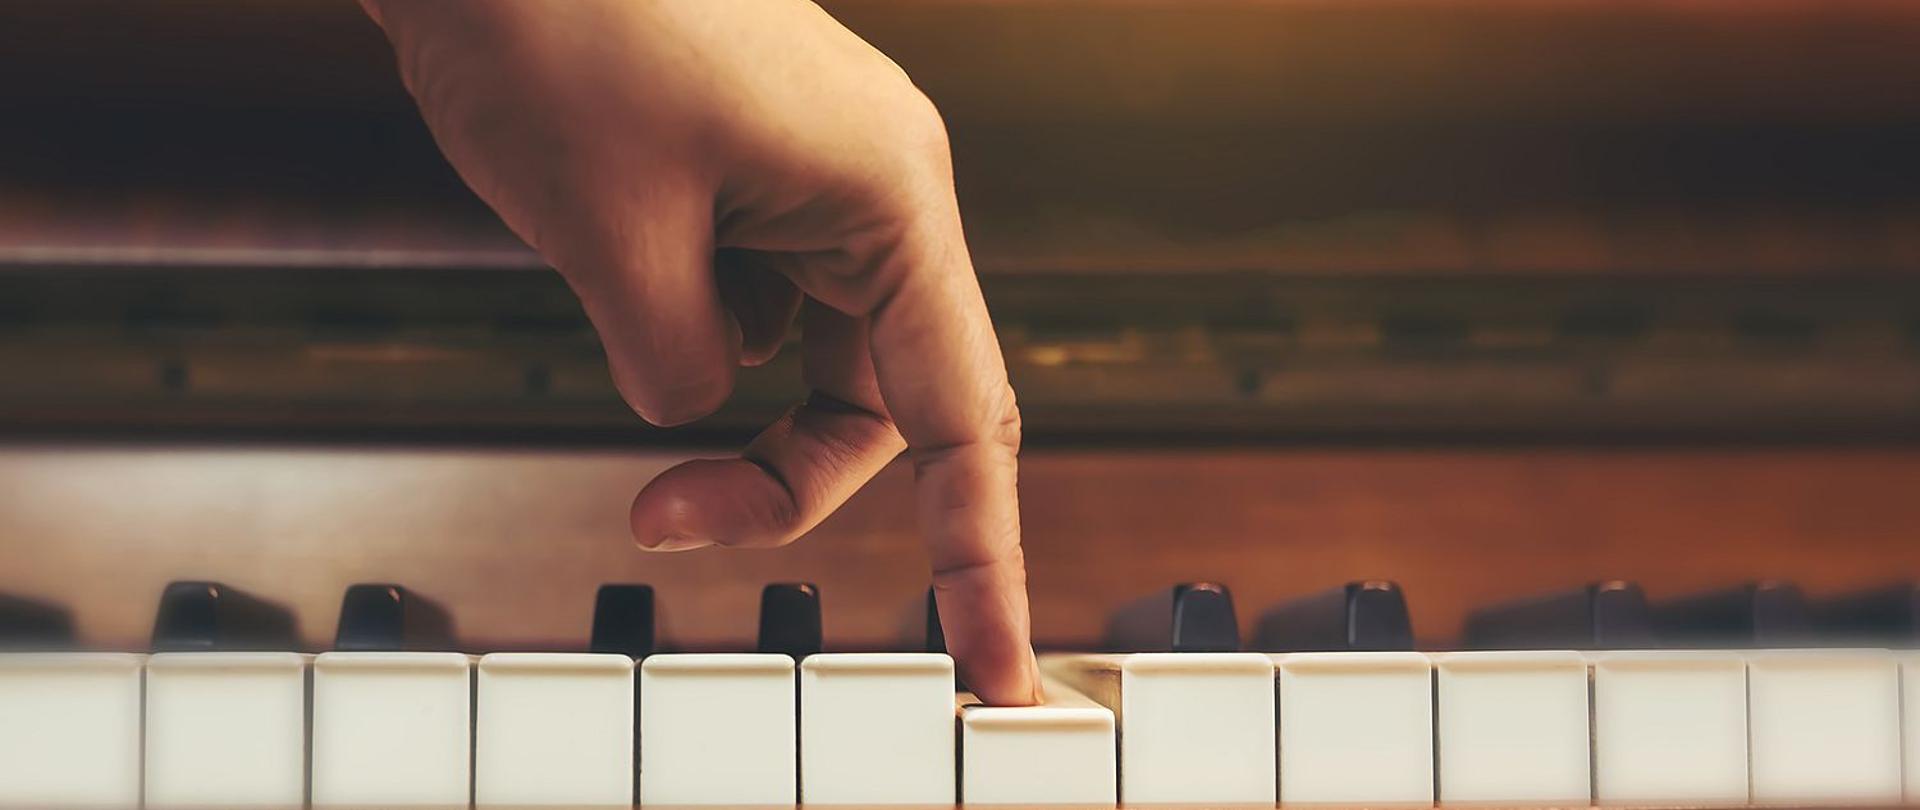 Zdjęcie przedstawia rękę wciskającą pionowo jeden klawisz na klawiaturze brązowego pianina.